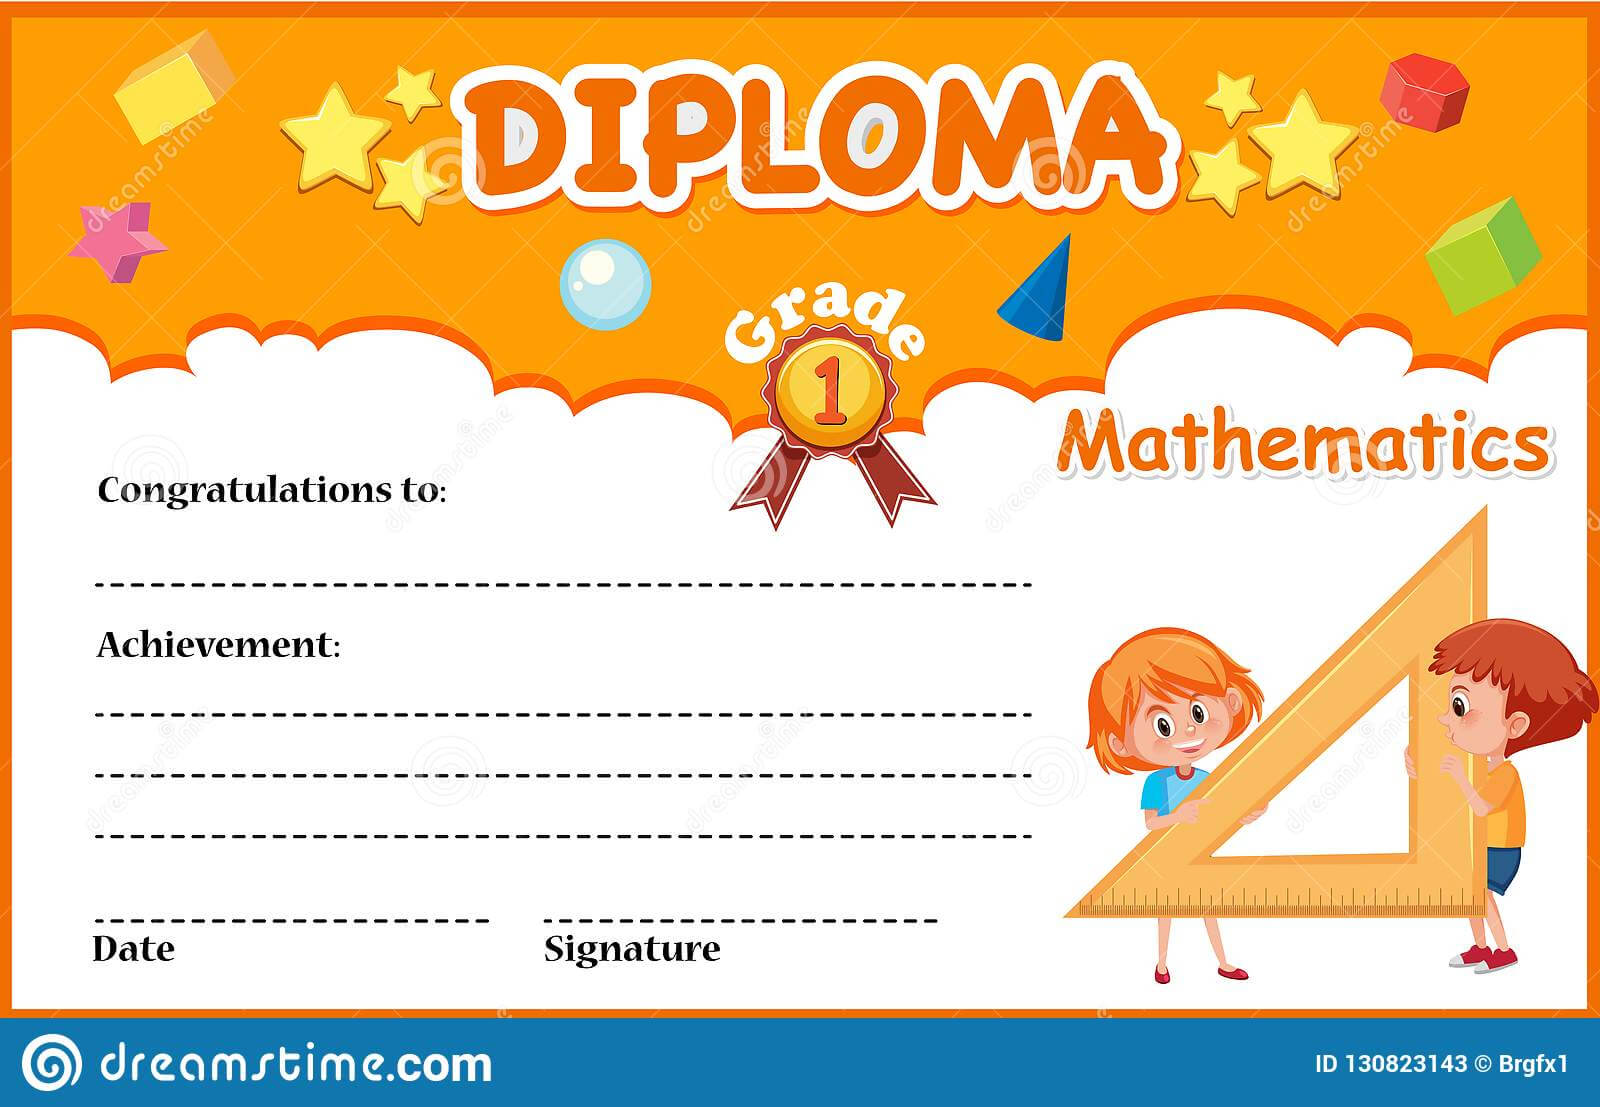 Mathematics Diploma Certificate Template Stock Vector With Regard To Math Certificate Template